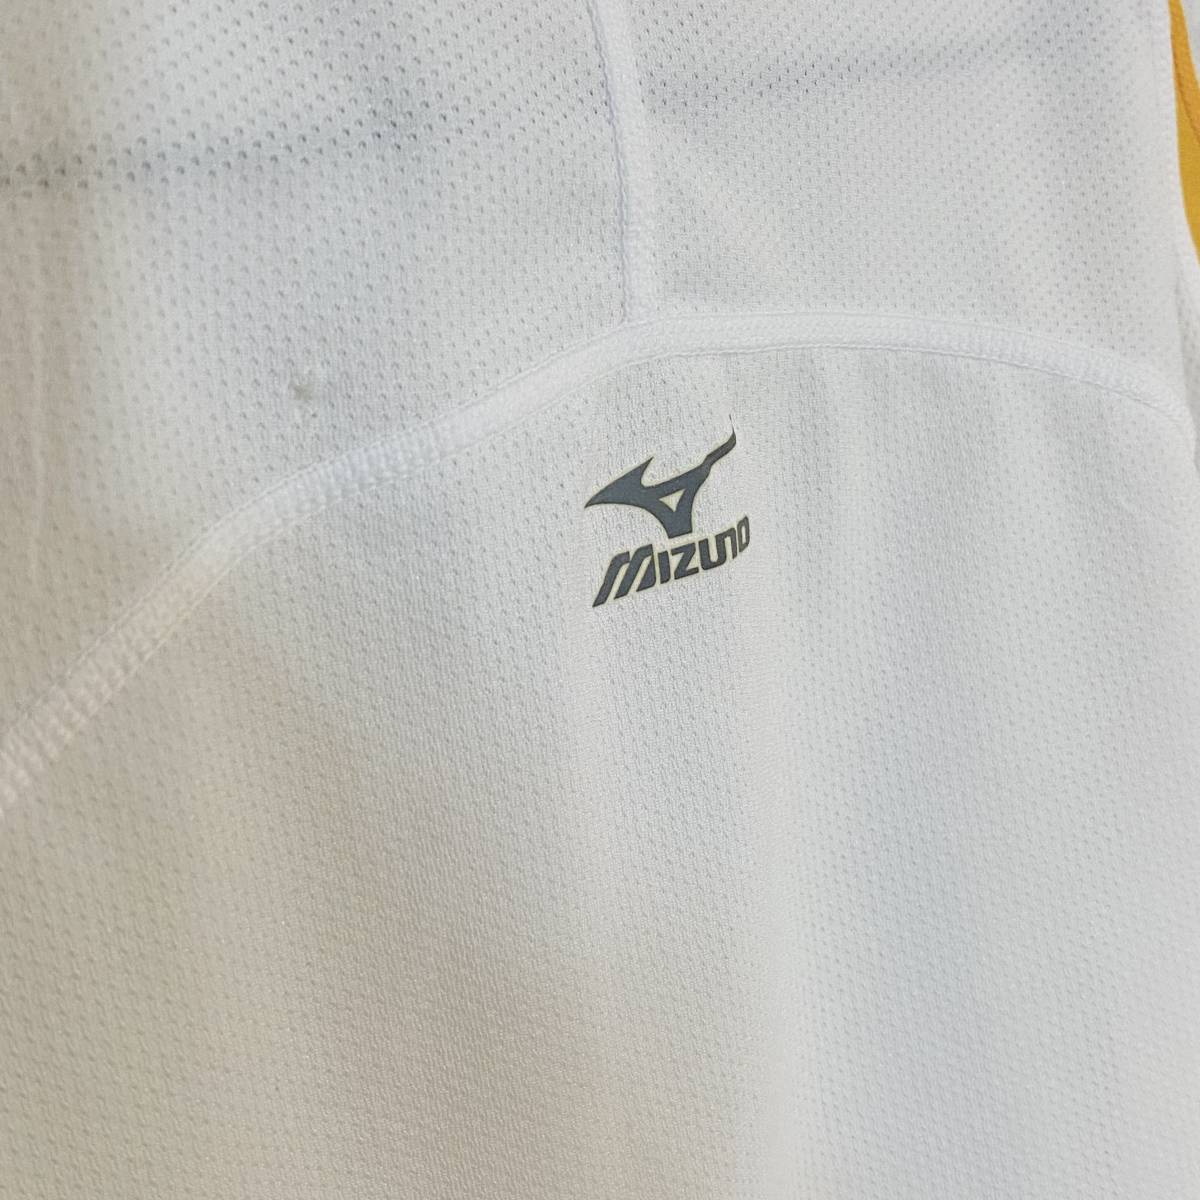 【中古】MIZUNO パネル S/S トレーニング Tシャツ ホワイト グレー イエロー M ミズノ スポーツウェア ランニング 美津濃